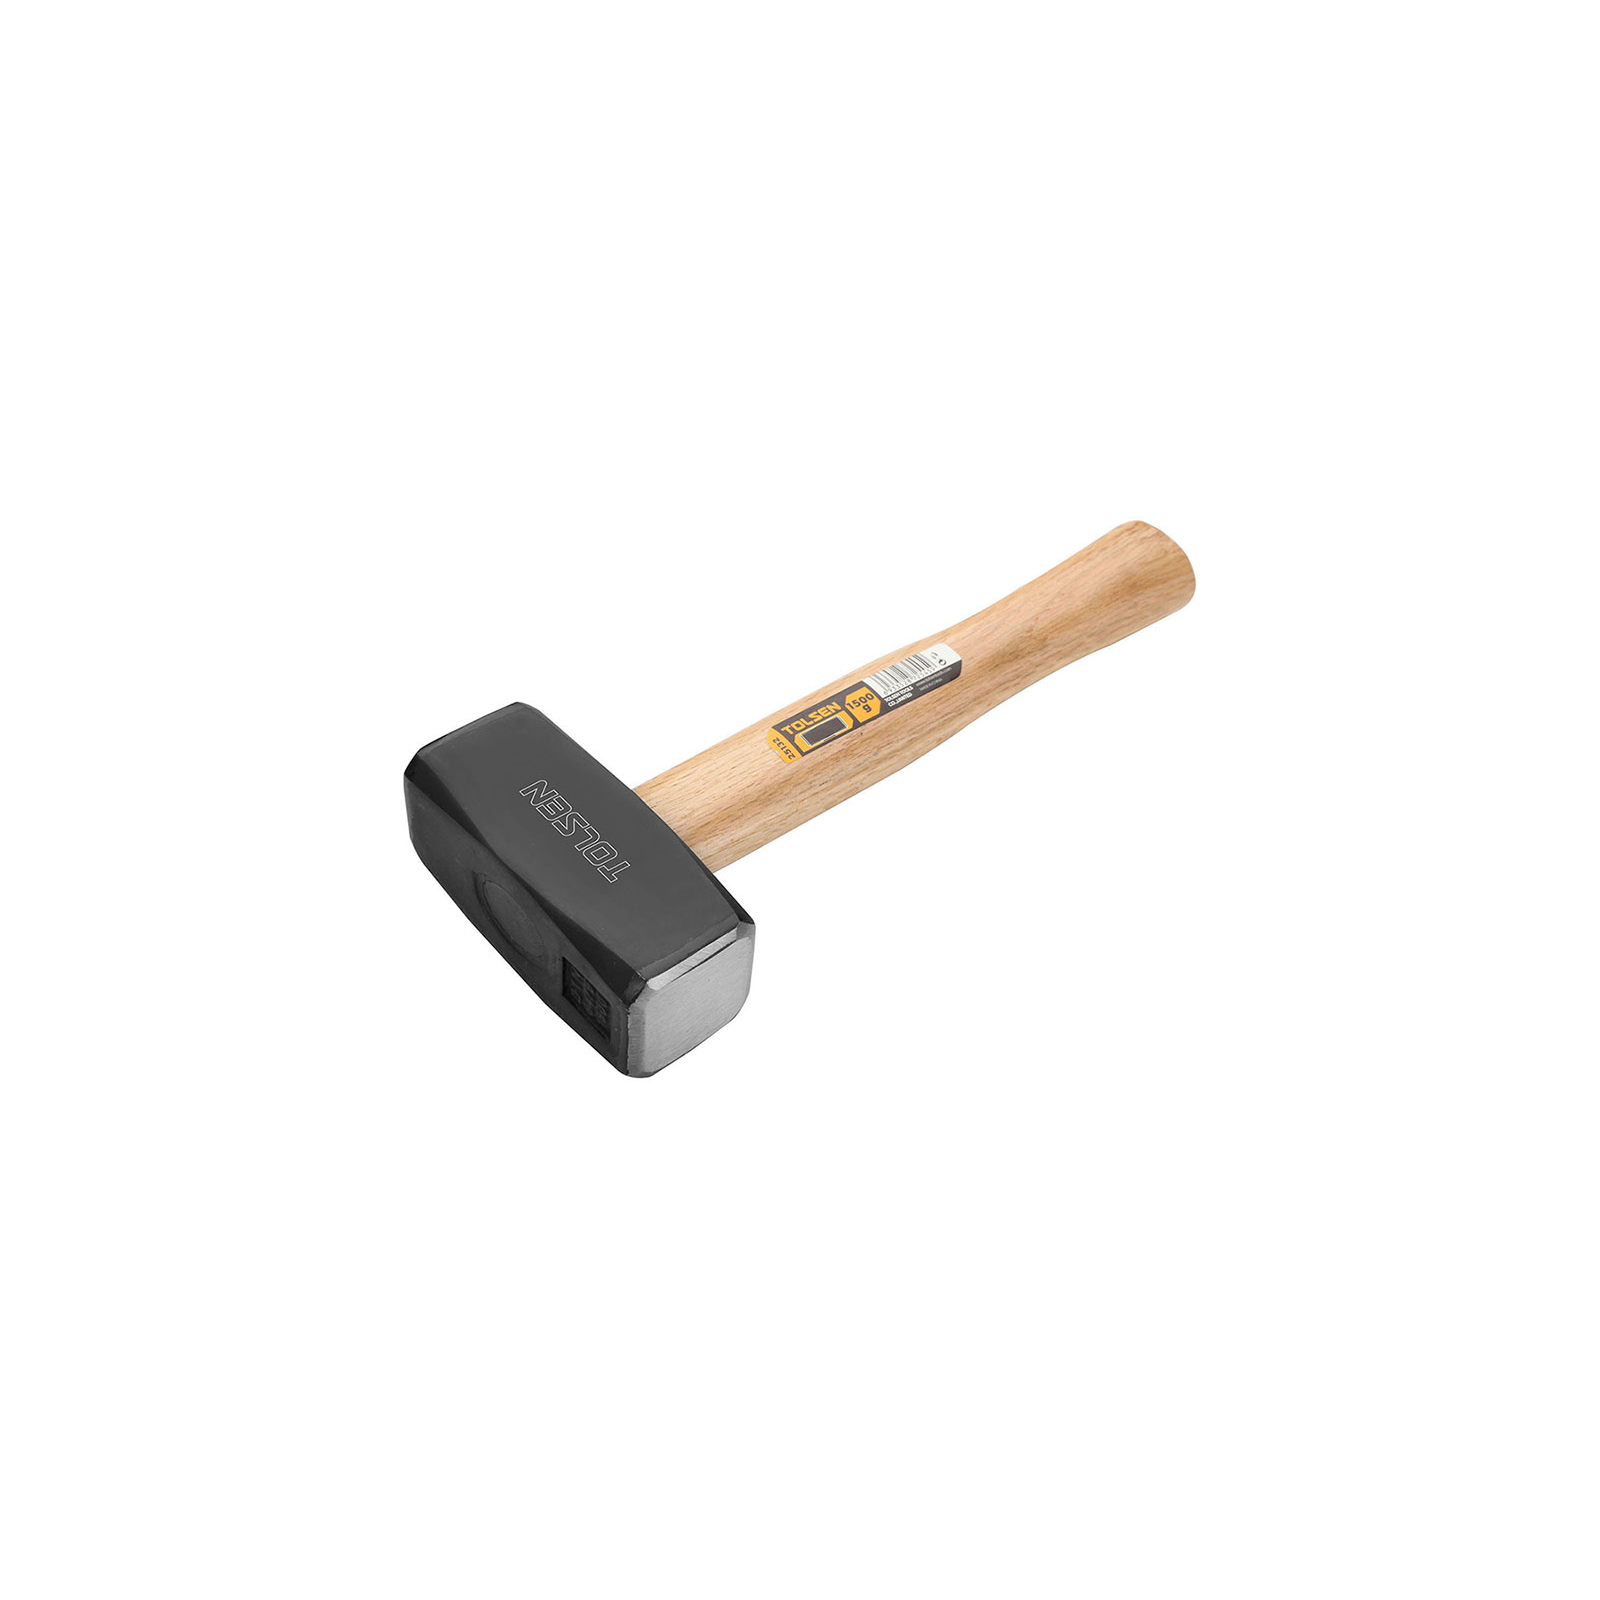 Кувалда Tolsen 2 кг дерев'яна ручка (25133)